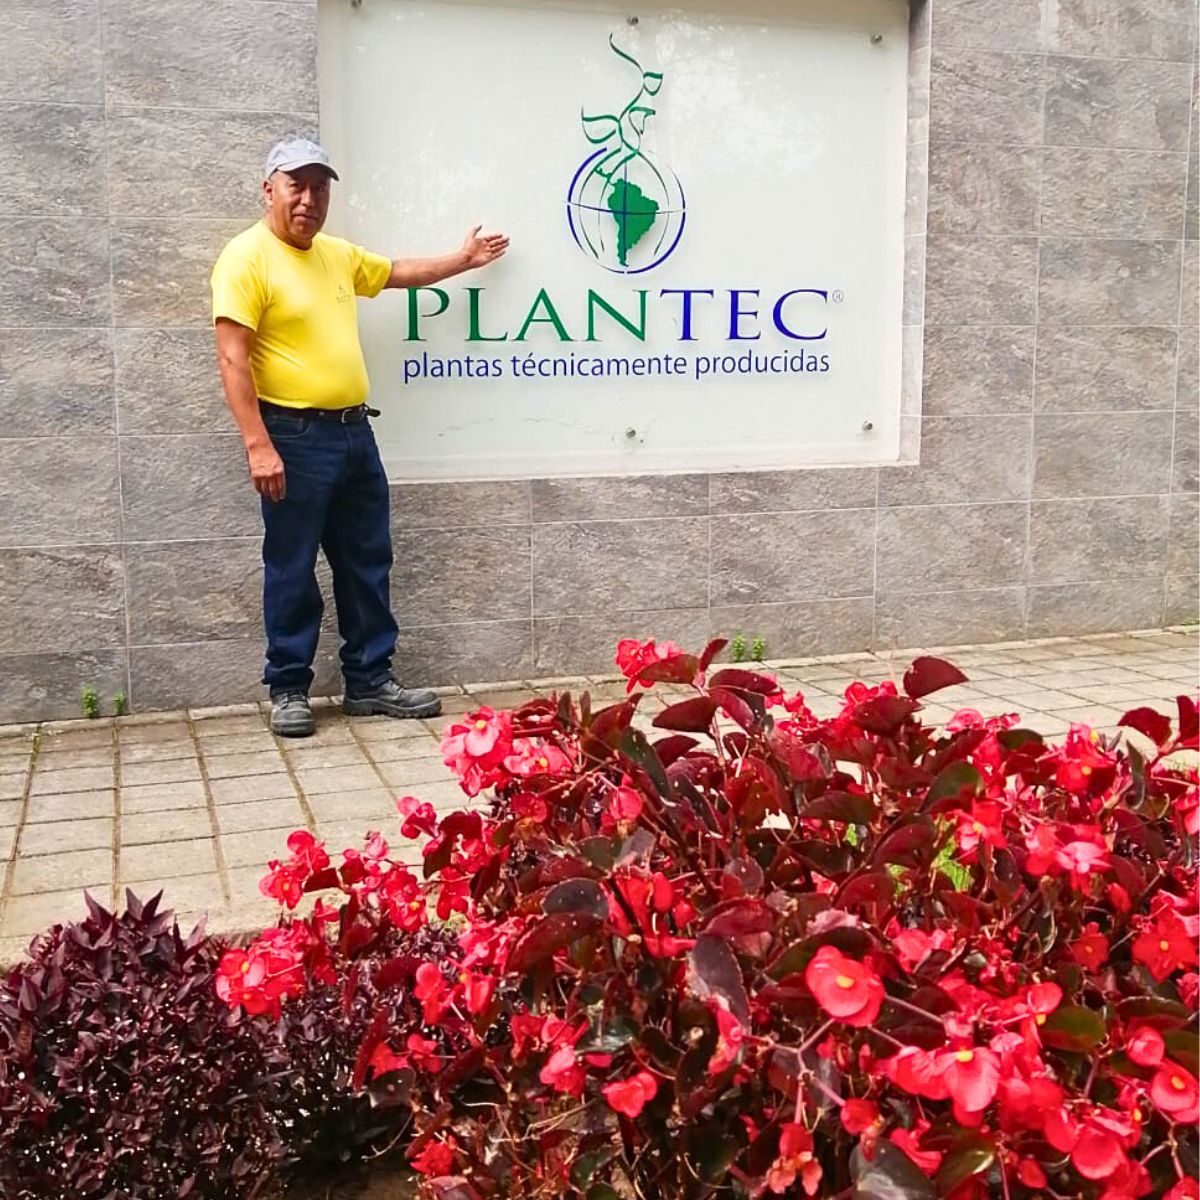 ​Plantec’s José Luis Tuston’s Story